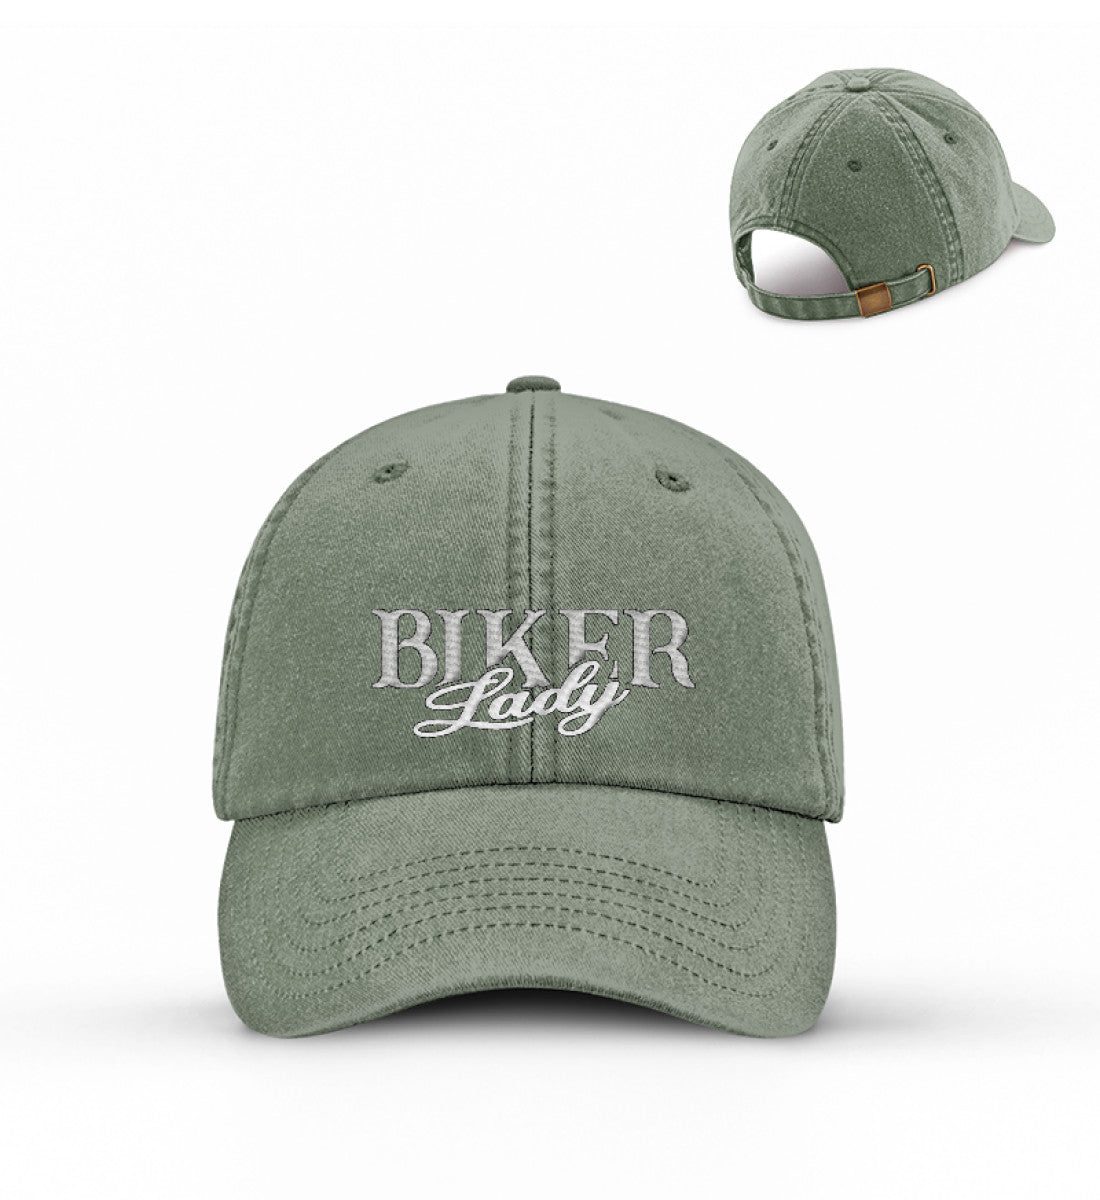 Eine Bikerin Cappy für Motorradfahrerinnen von Wingbikers mit dem Stick, Biker Lady, in vintage olive.